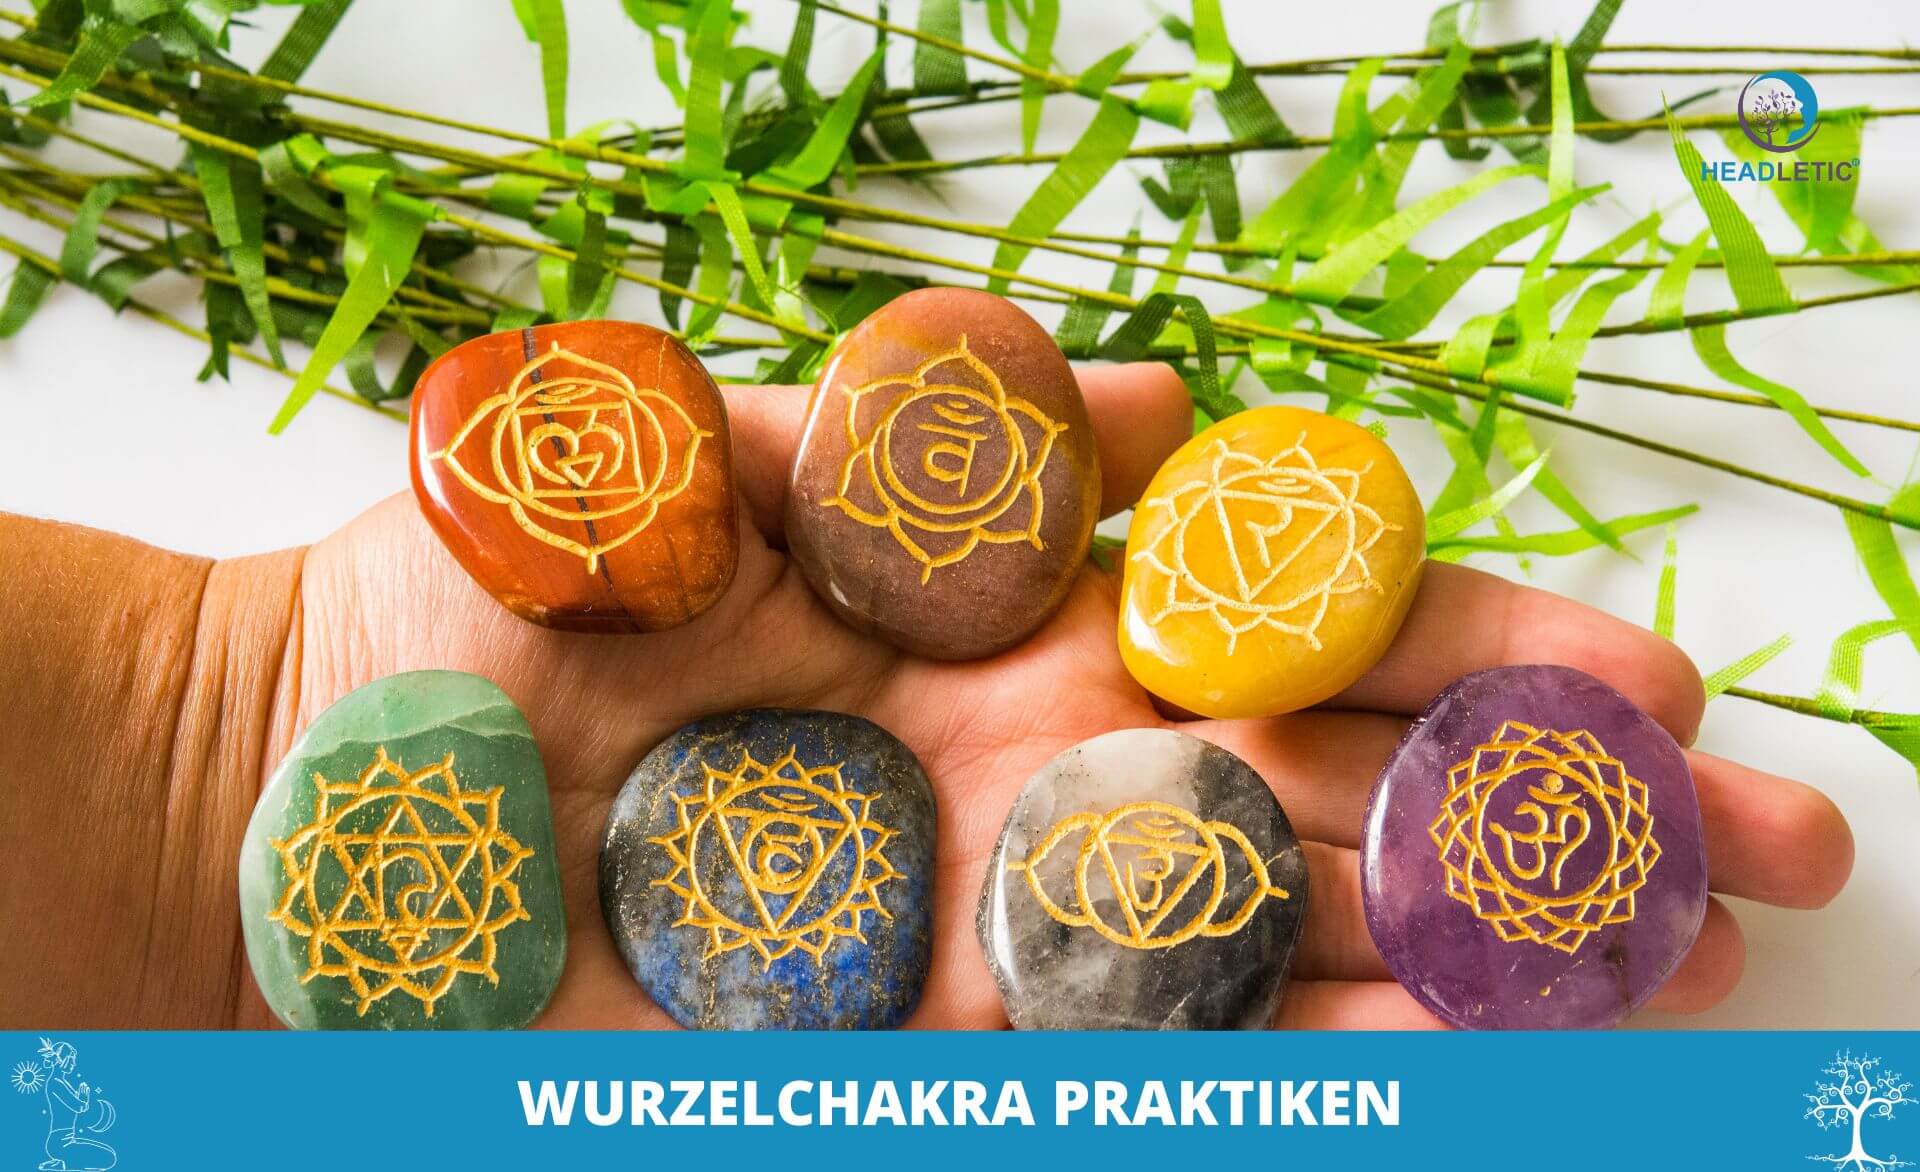 Eine Gruppe von Steinen mit der Aufschrift Wurzelchakra, perfekt für die Wurzelchakra-Meditation und das Befolgen der Wurzelchakra-Anleitung.